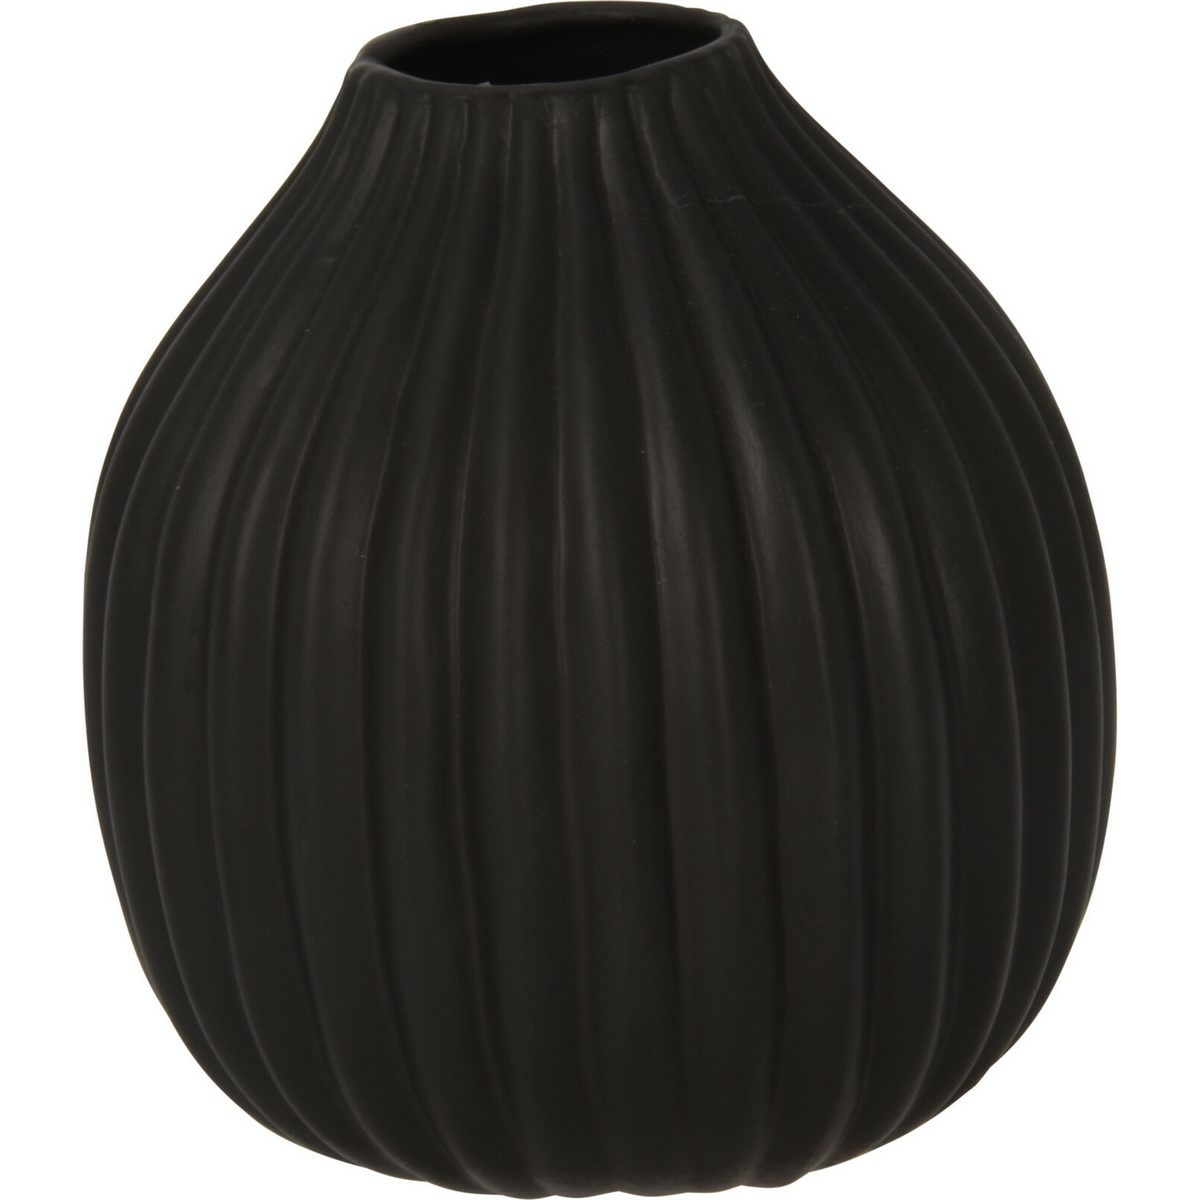 Rebrovaná váza Maeve čierna, 12 x 14 cm, dolomit